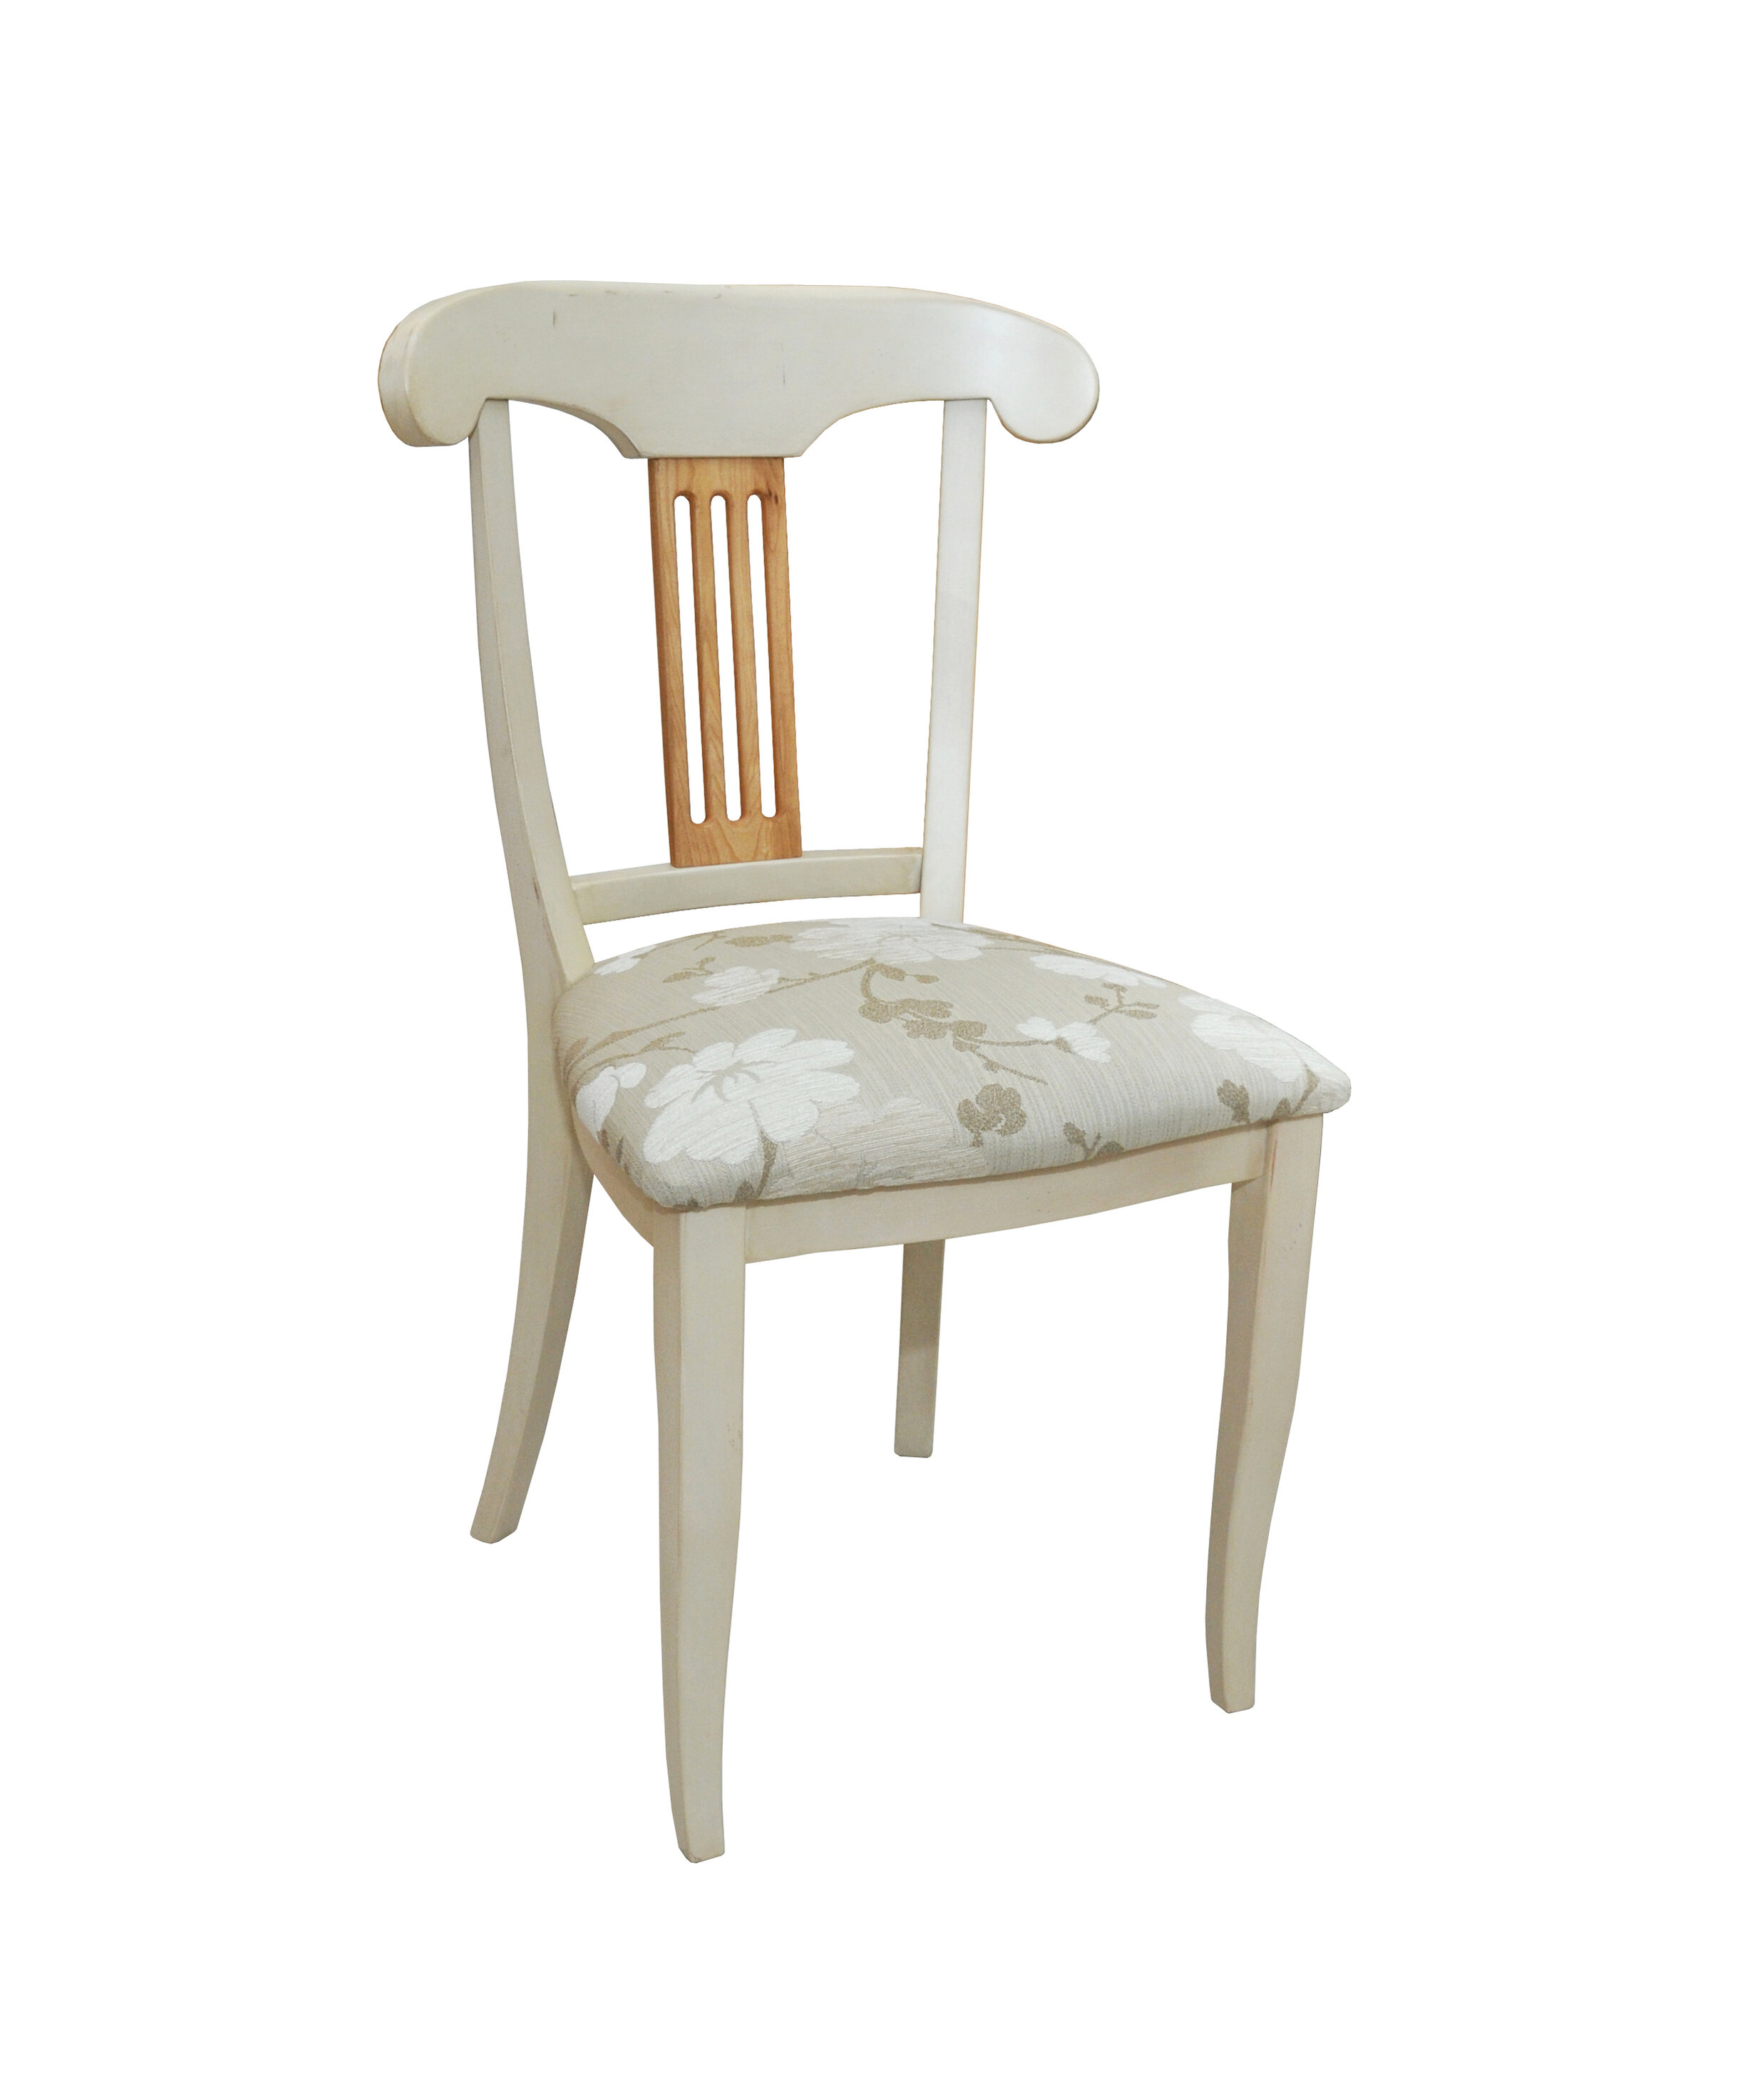 Biela, provensálska stolička z masívneho dreva, doplnená o čalúnený, kvetovaný podsedák a hnedé operadlo s tromi výrezmi